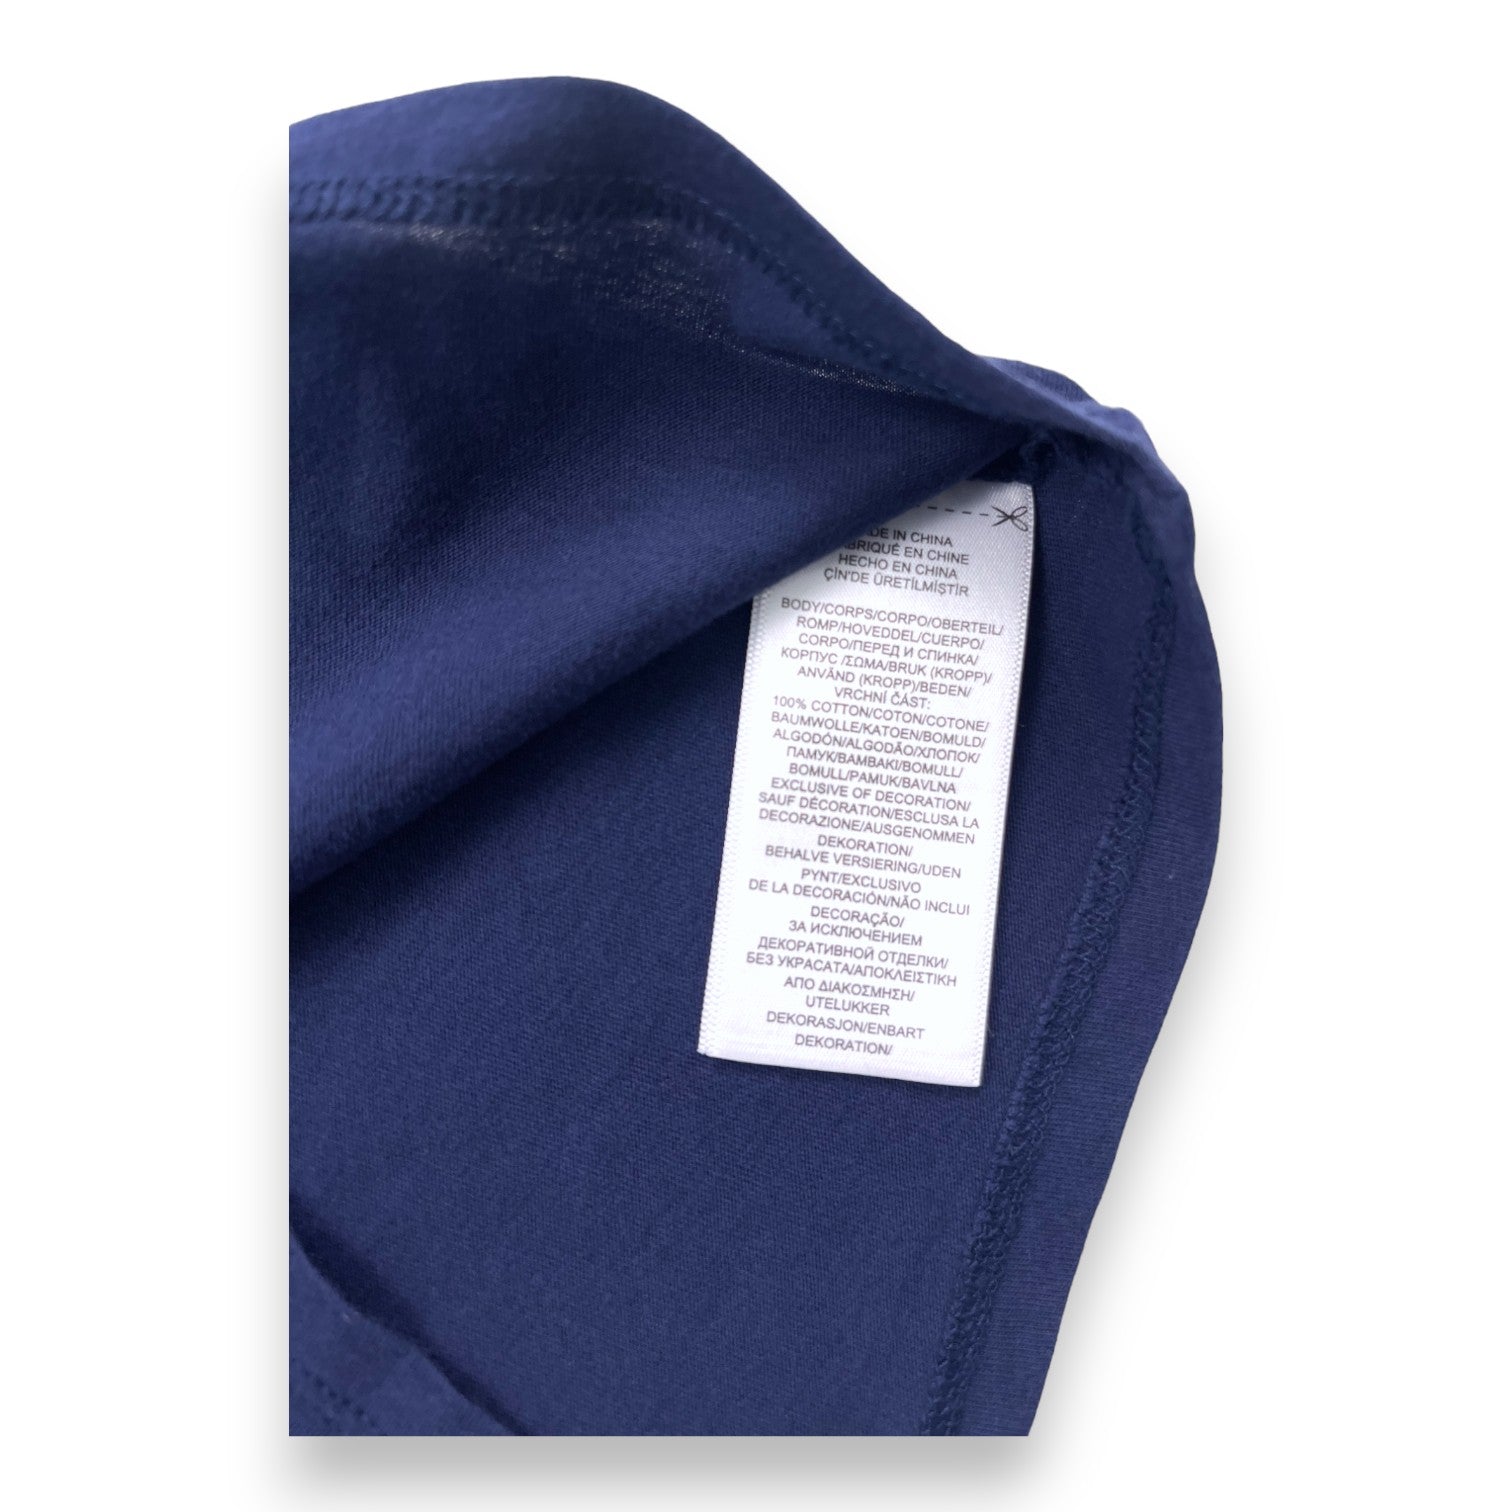 RALPH LAUREN - T shirt manches courtes bleu marine à motifs - 2 ans